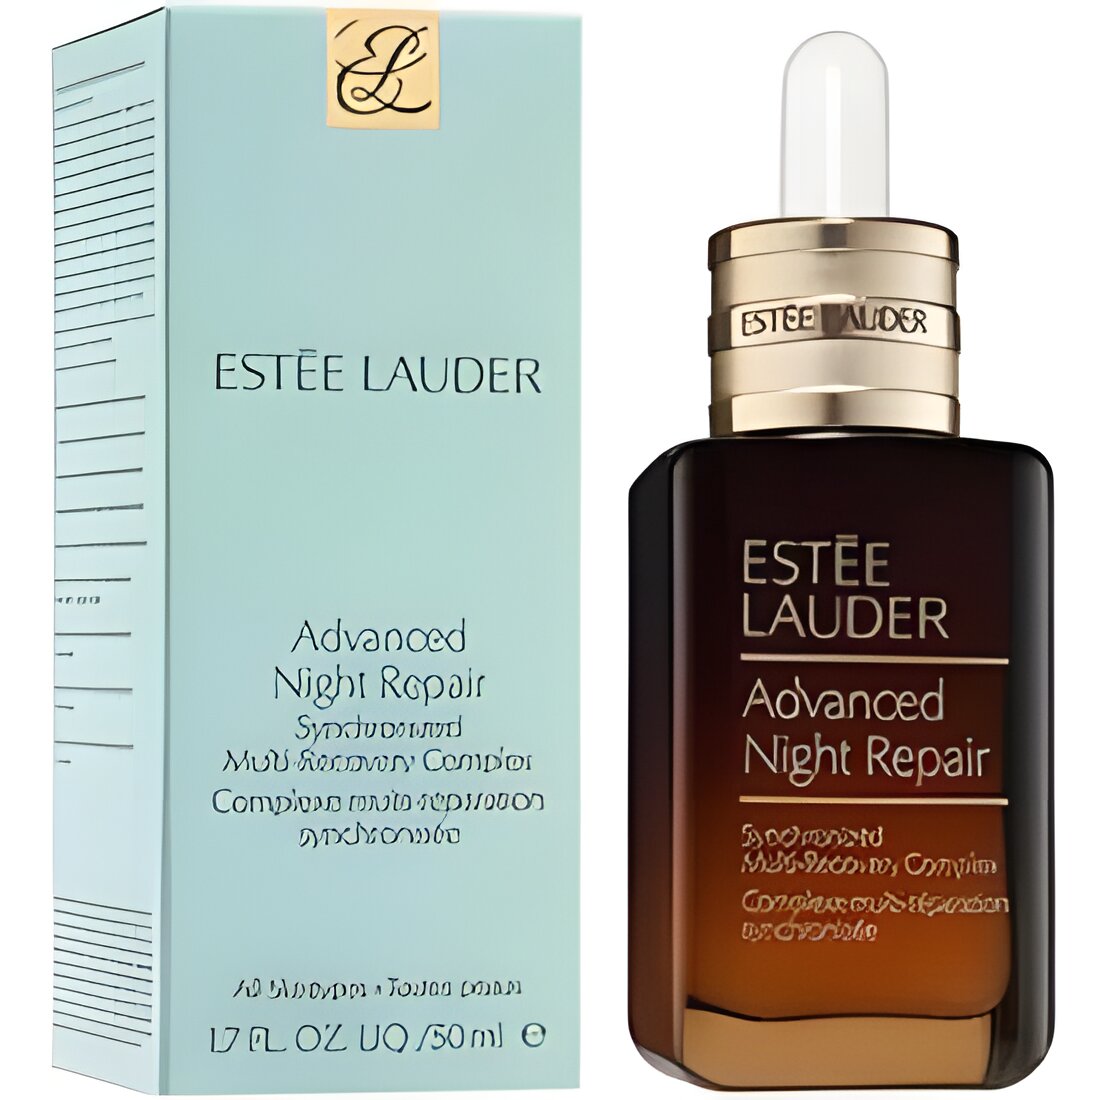 Free Estee Lauder's NEW Advanced Night Repair Serum